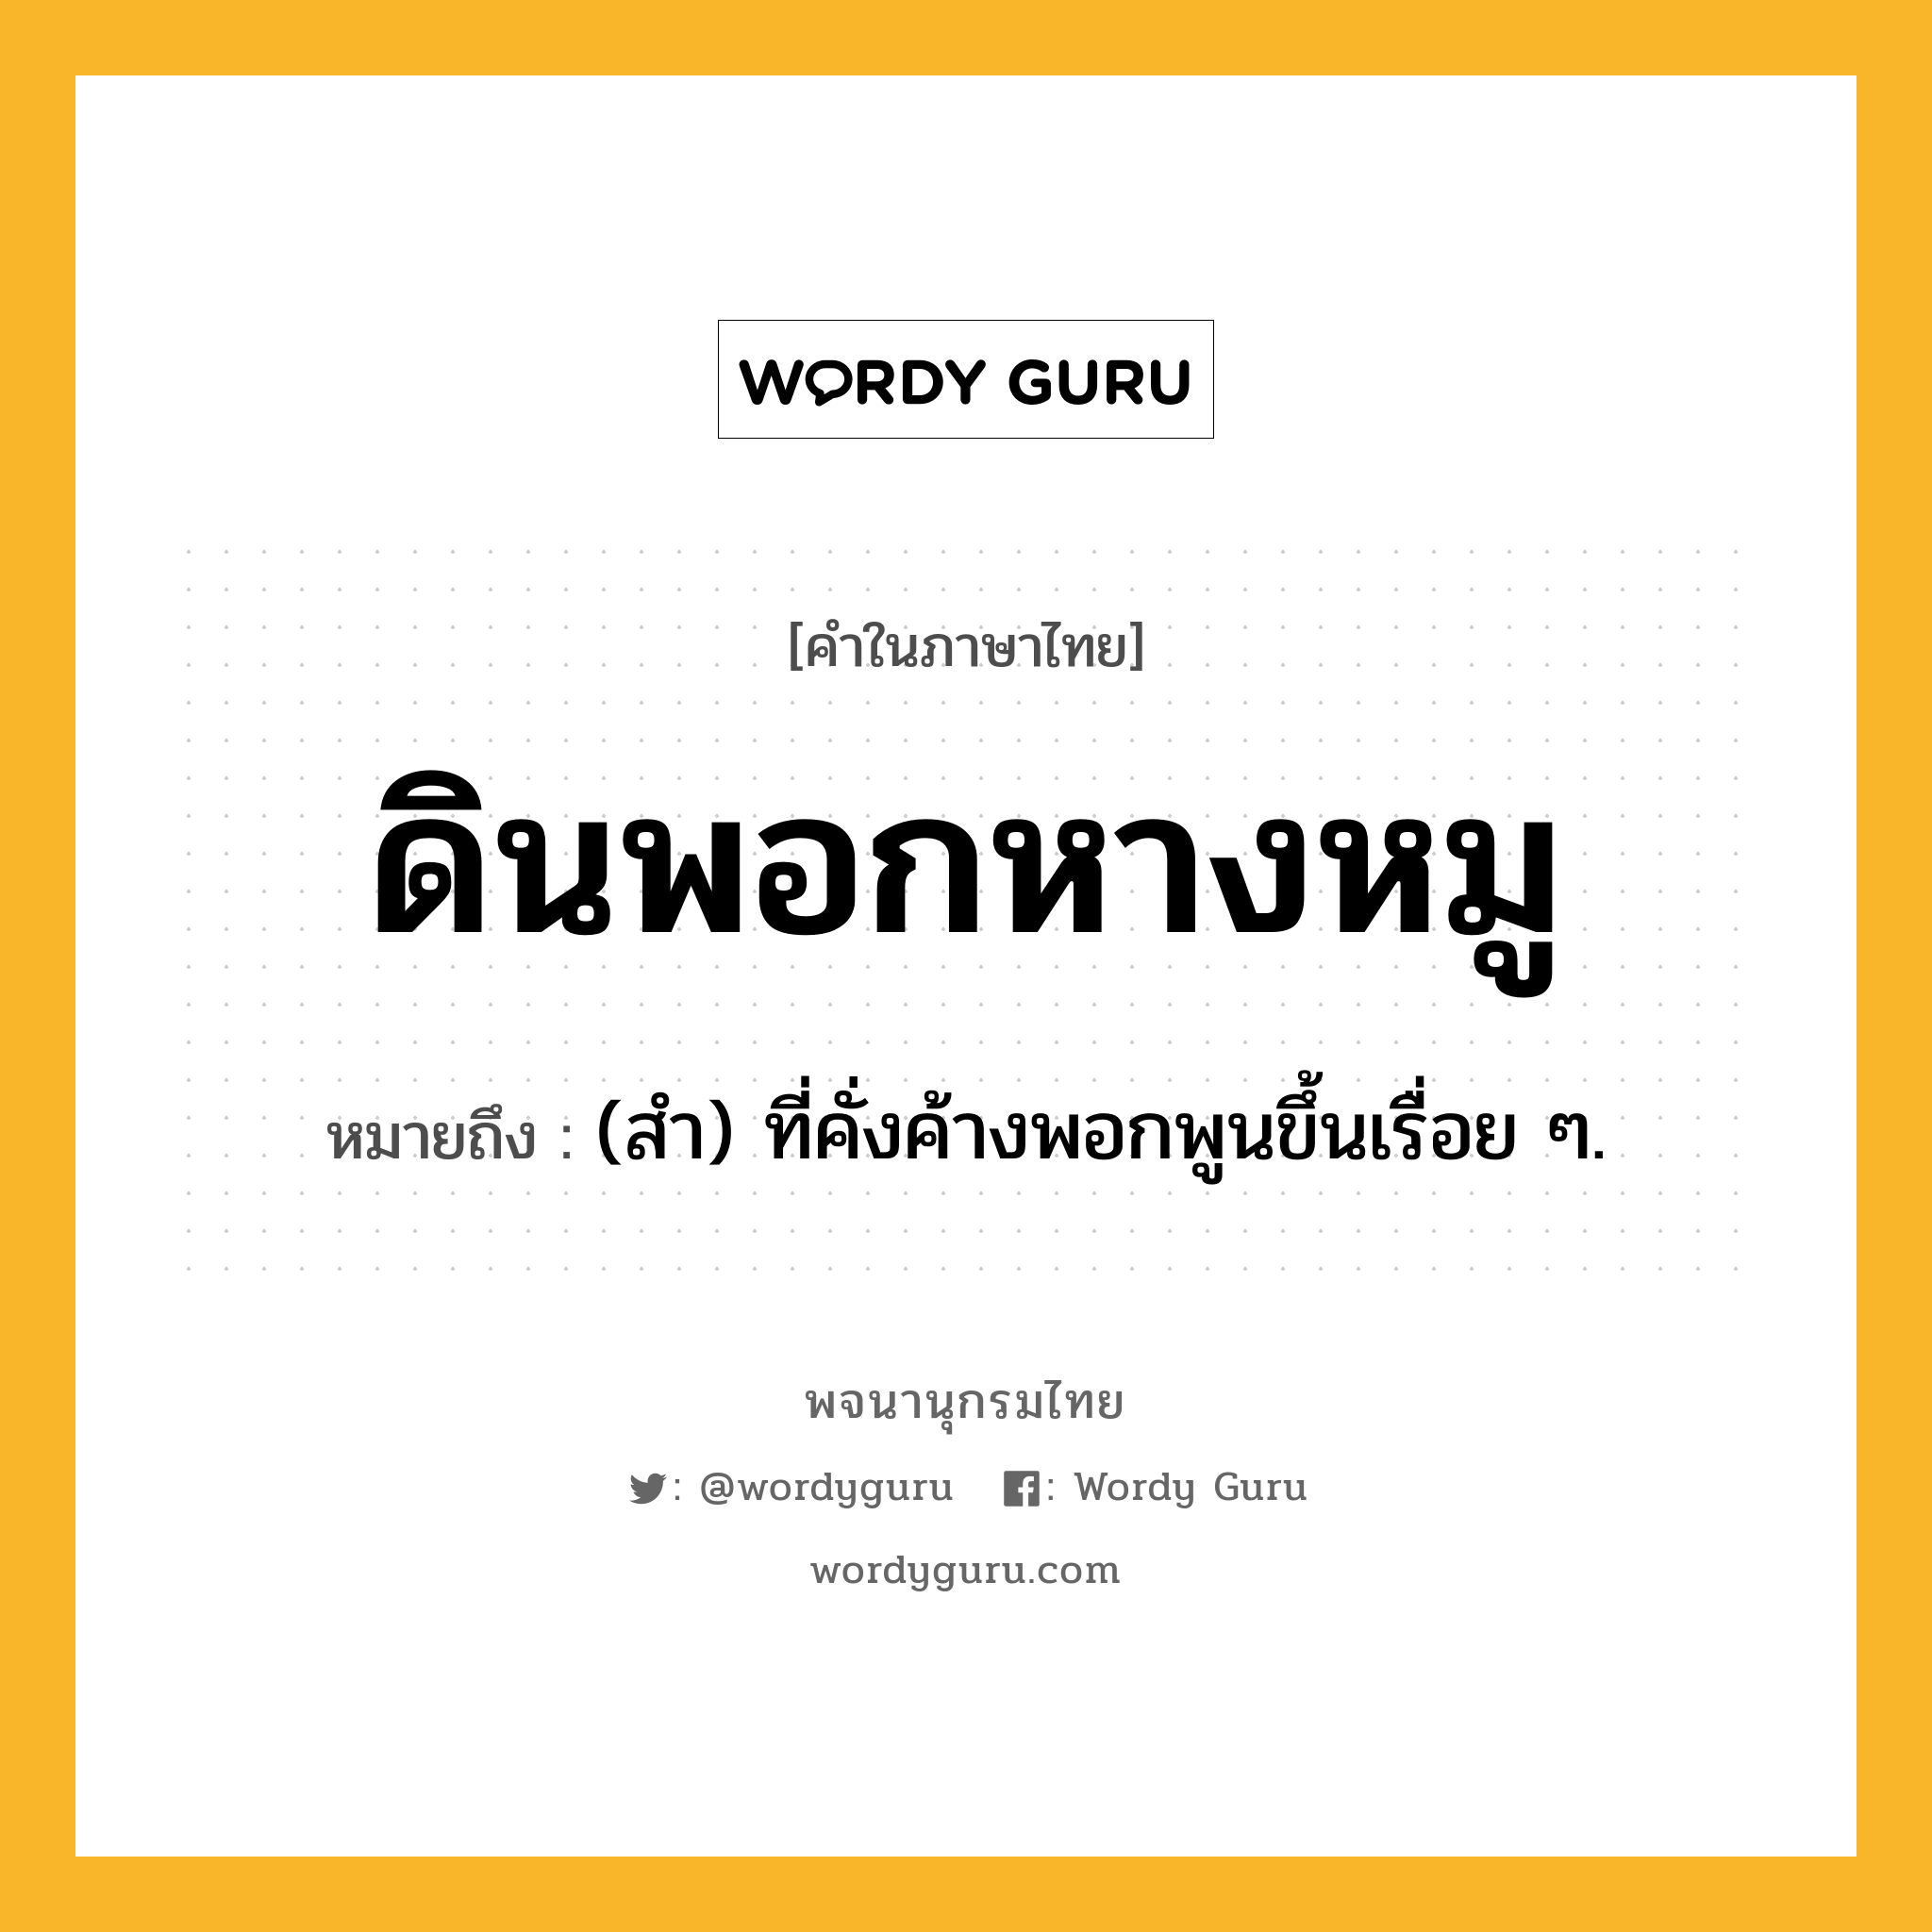 ดินพอกหางหมู ความหมาย หมายถึงอะไร?, คำในภาษาไทย ดินพอกหางหมู หมายถึง (สํา) ที่คั่งค้างพอกพูนขึ้นเรื่อย ๆ.